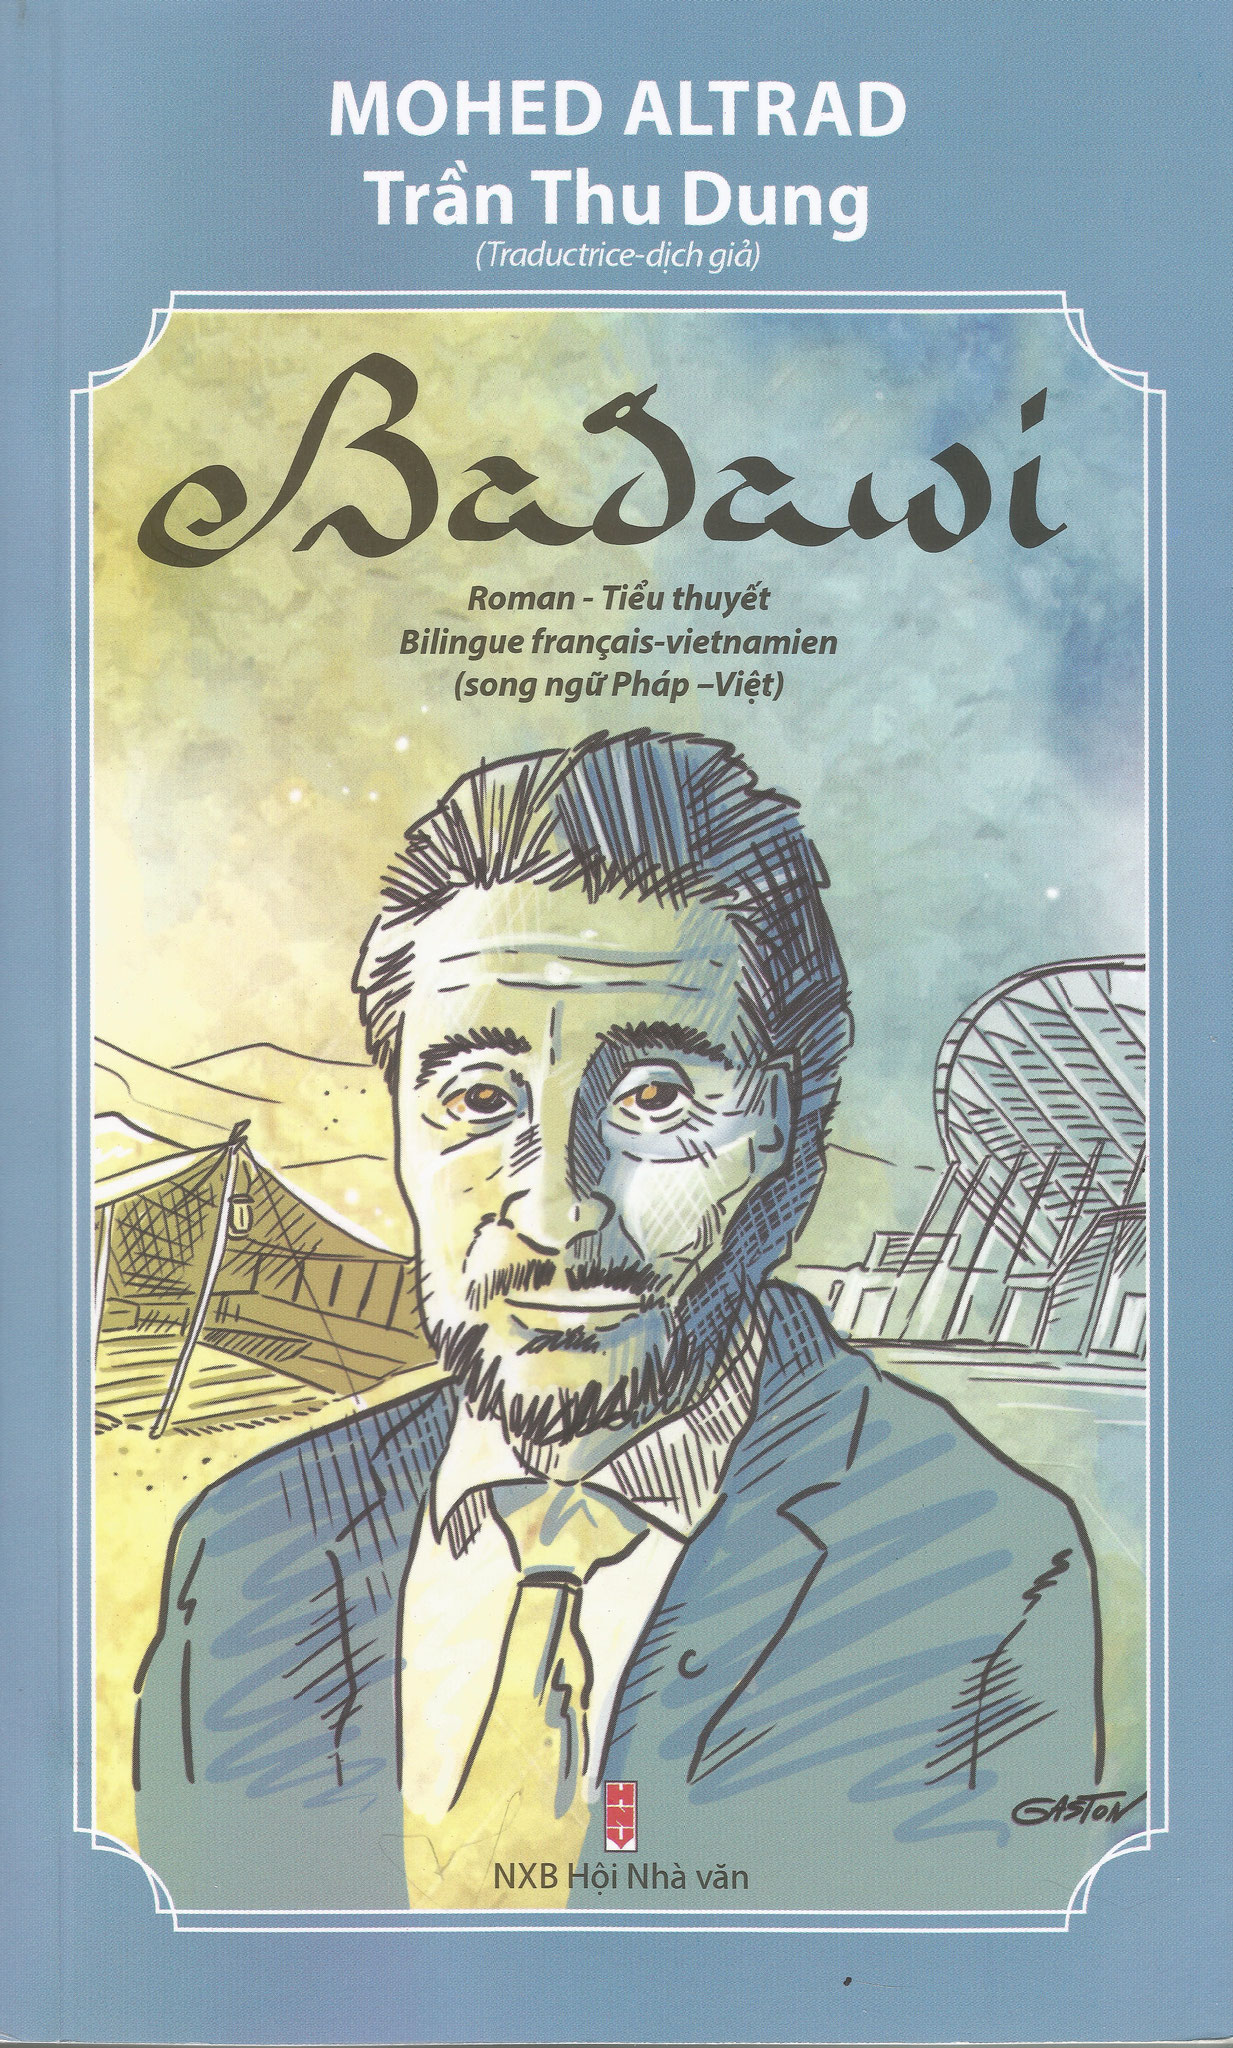  Parution du roman "BADAWI", écrit par Mohed Altrad et traduit en version bilingue, français et vietnamien, à l'initiative d'AD@lY